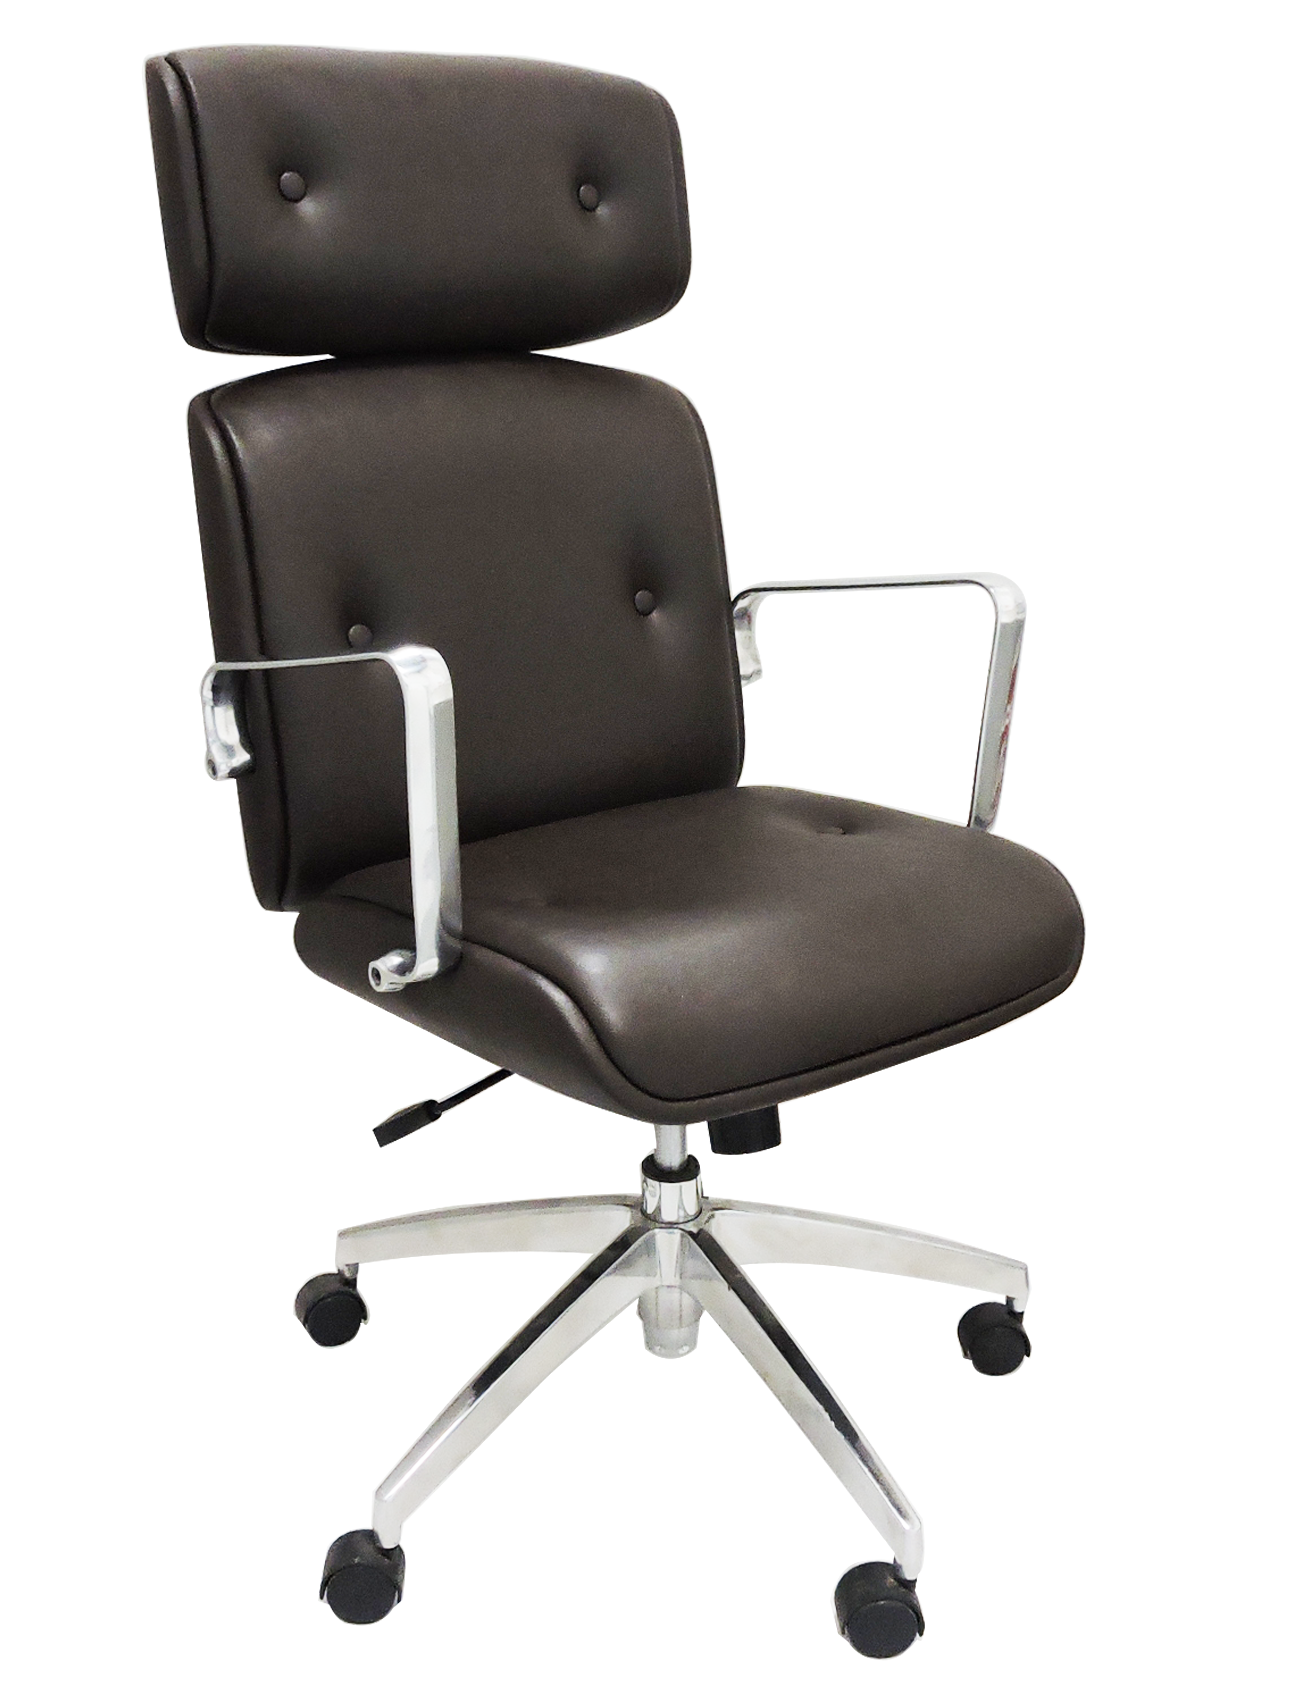 Cadeira Presidente Eames Office Elite Chair - Revestida Vinil Marrom